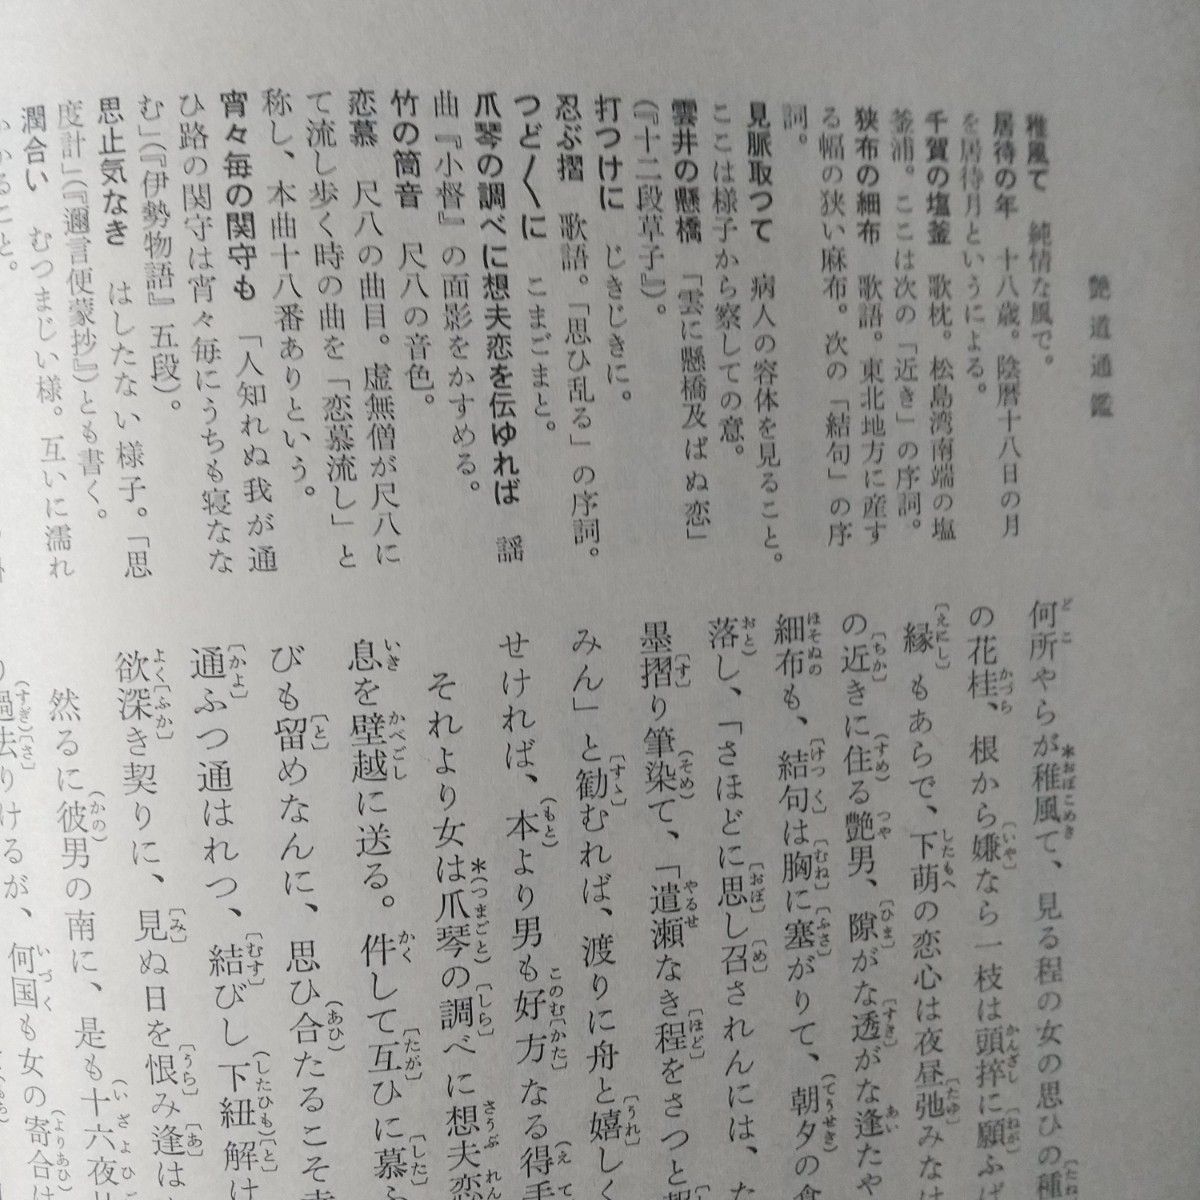 日本思想大系「近世色道論」 60  月報付